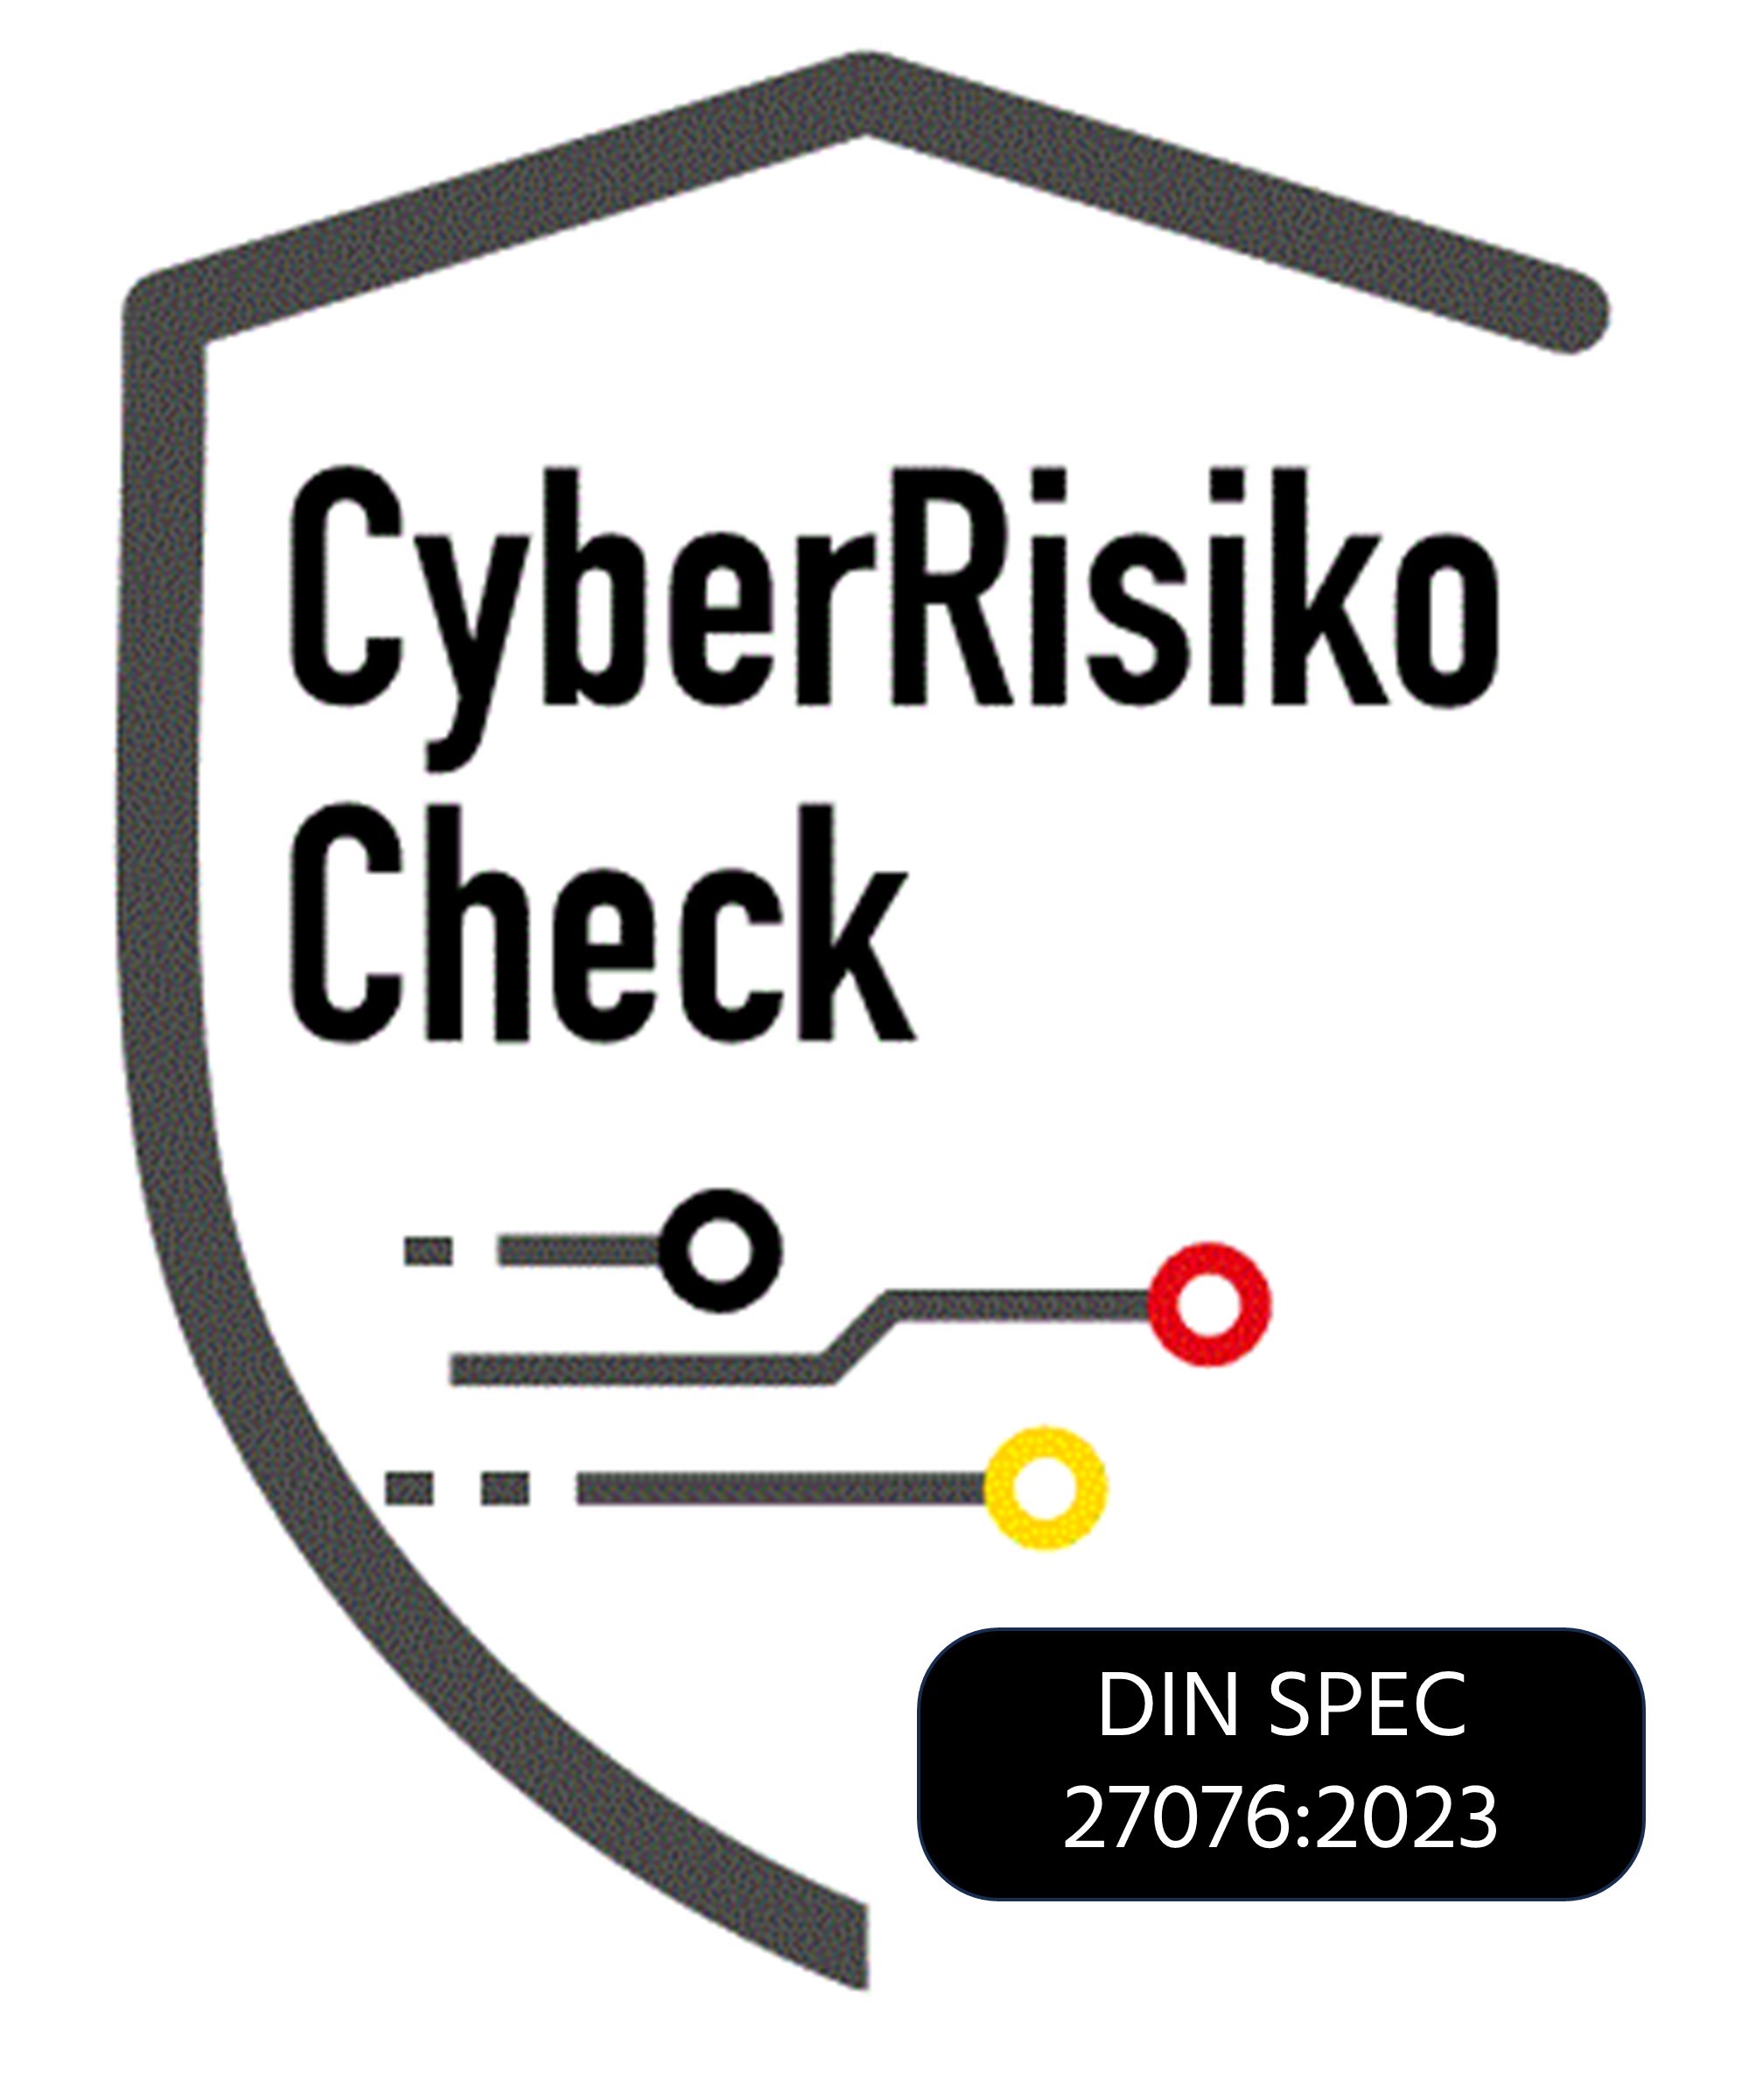 CyberRiskoCheck (DIN SPEC 27076)